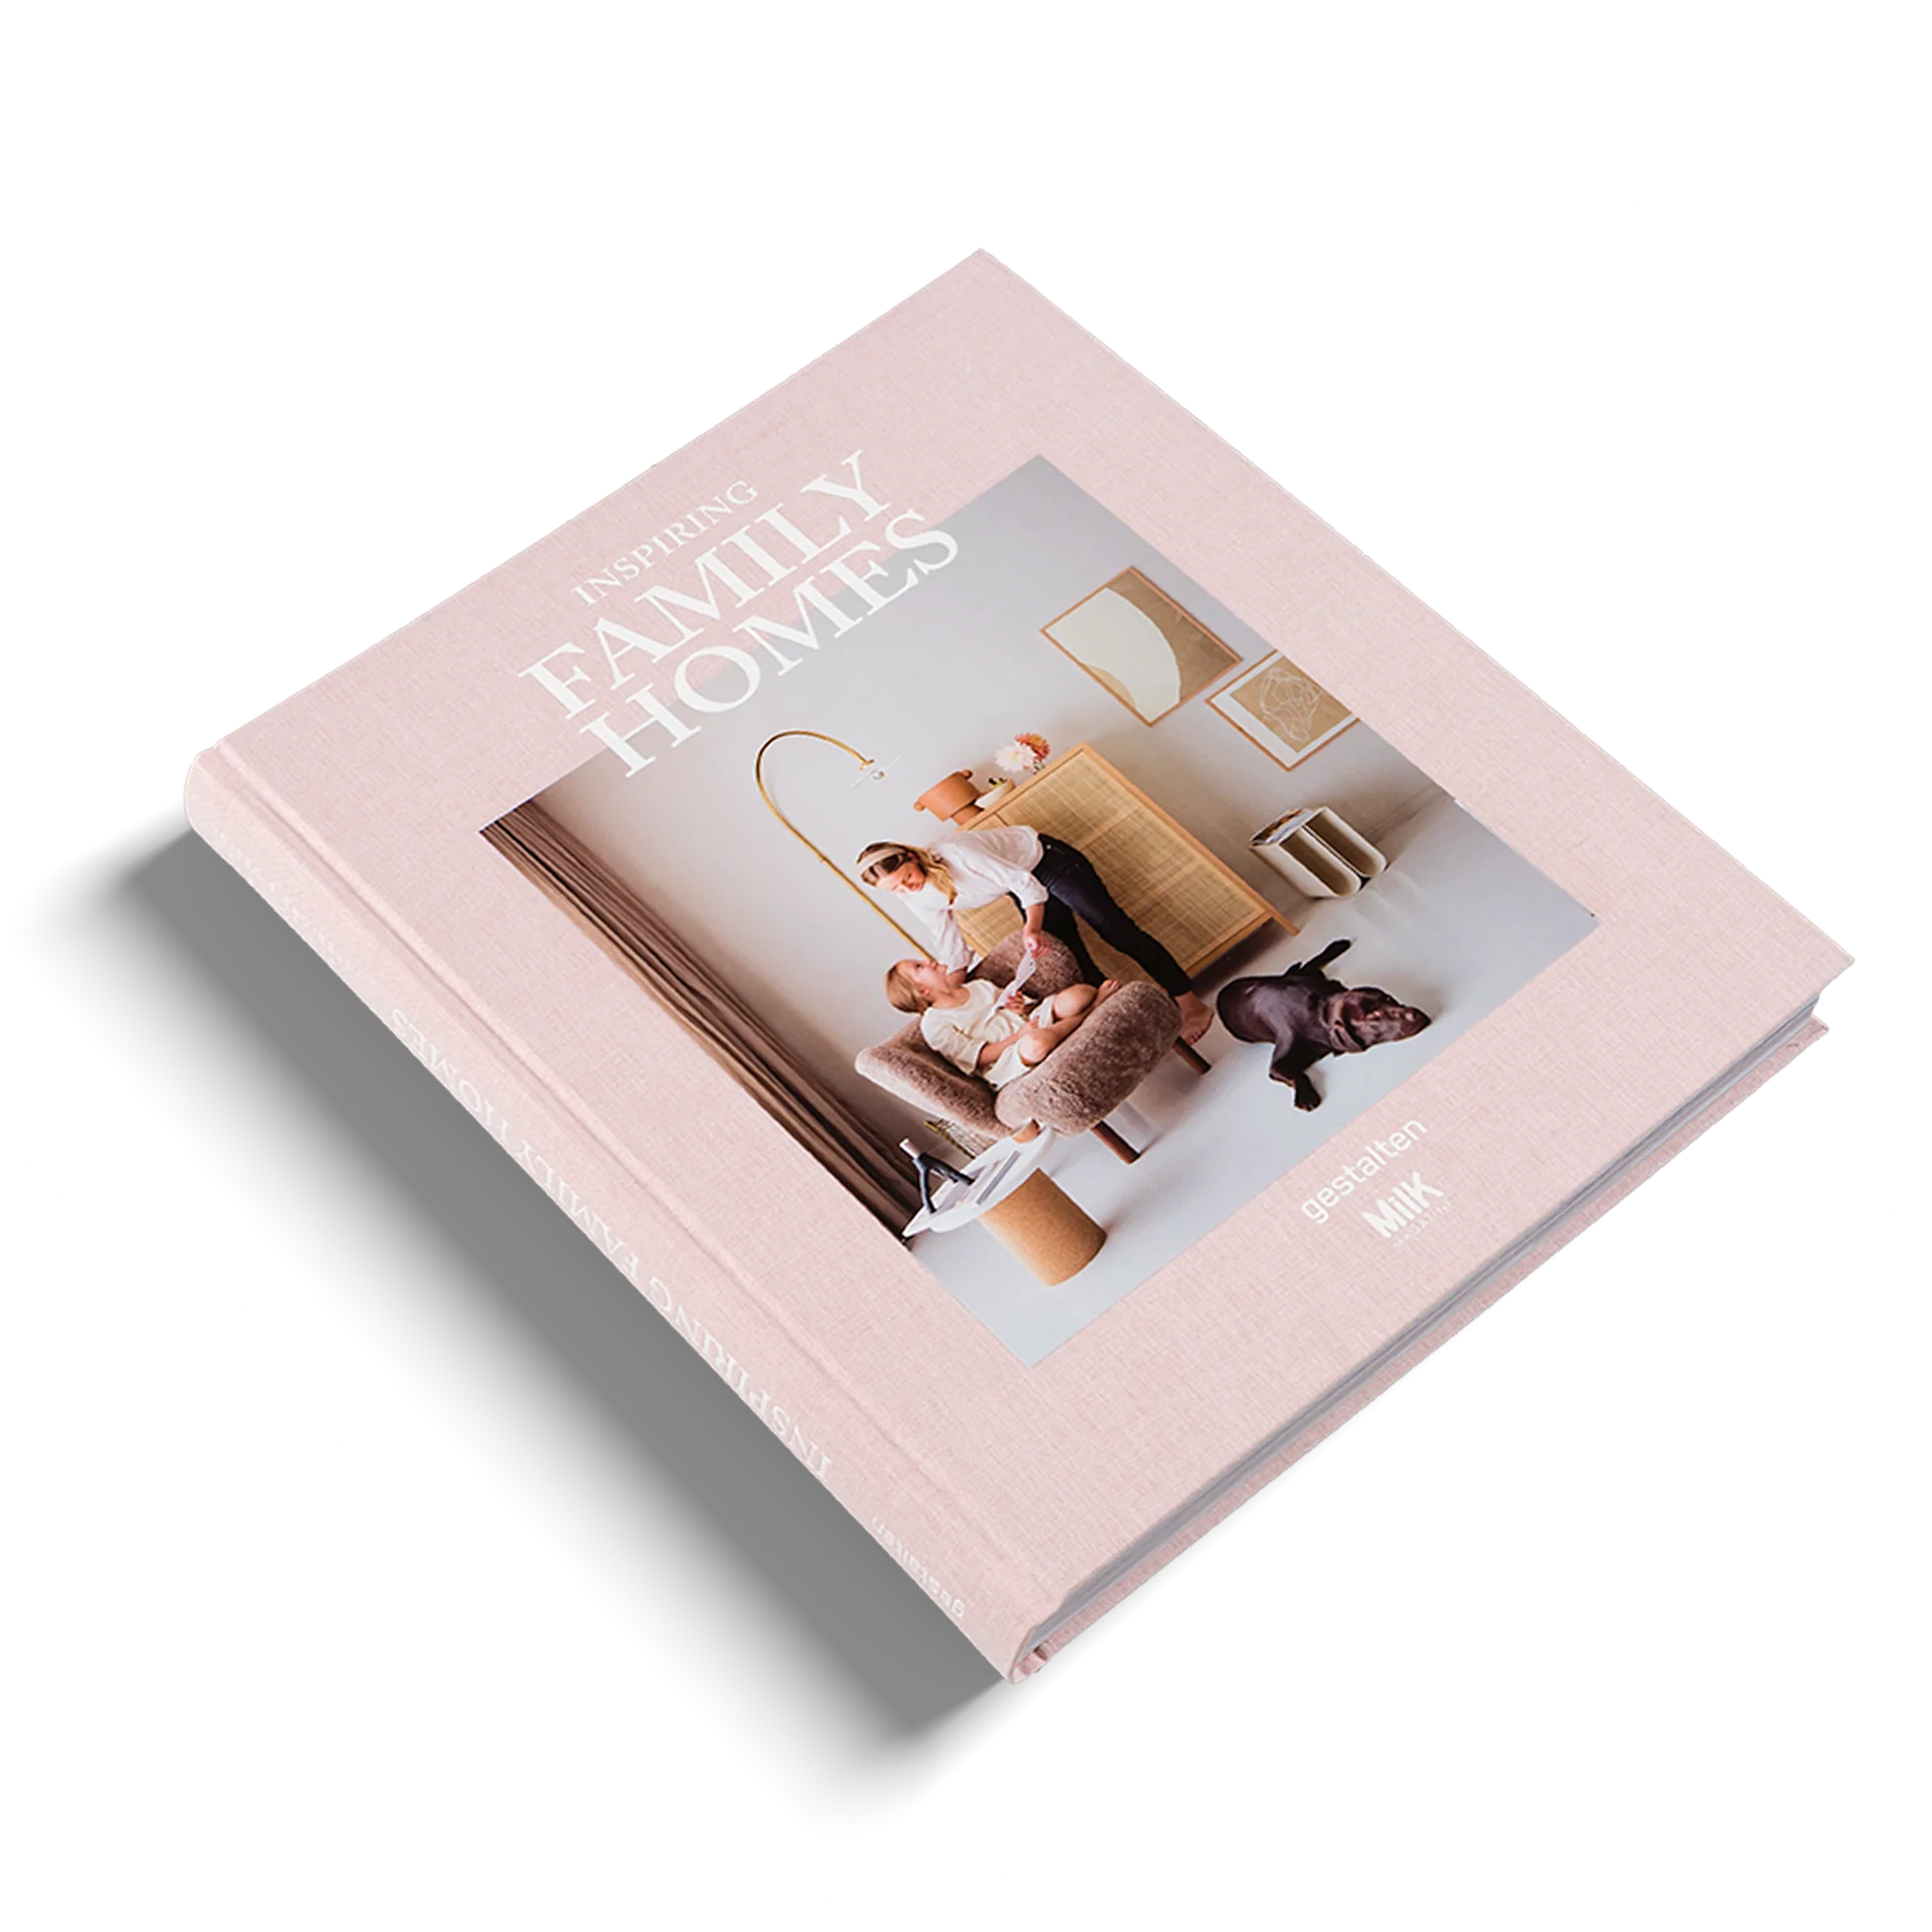 ספר עיצוב FAMILY HOMES